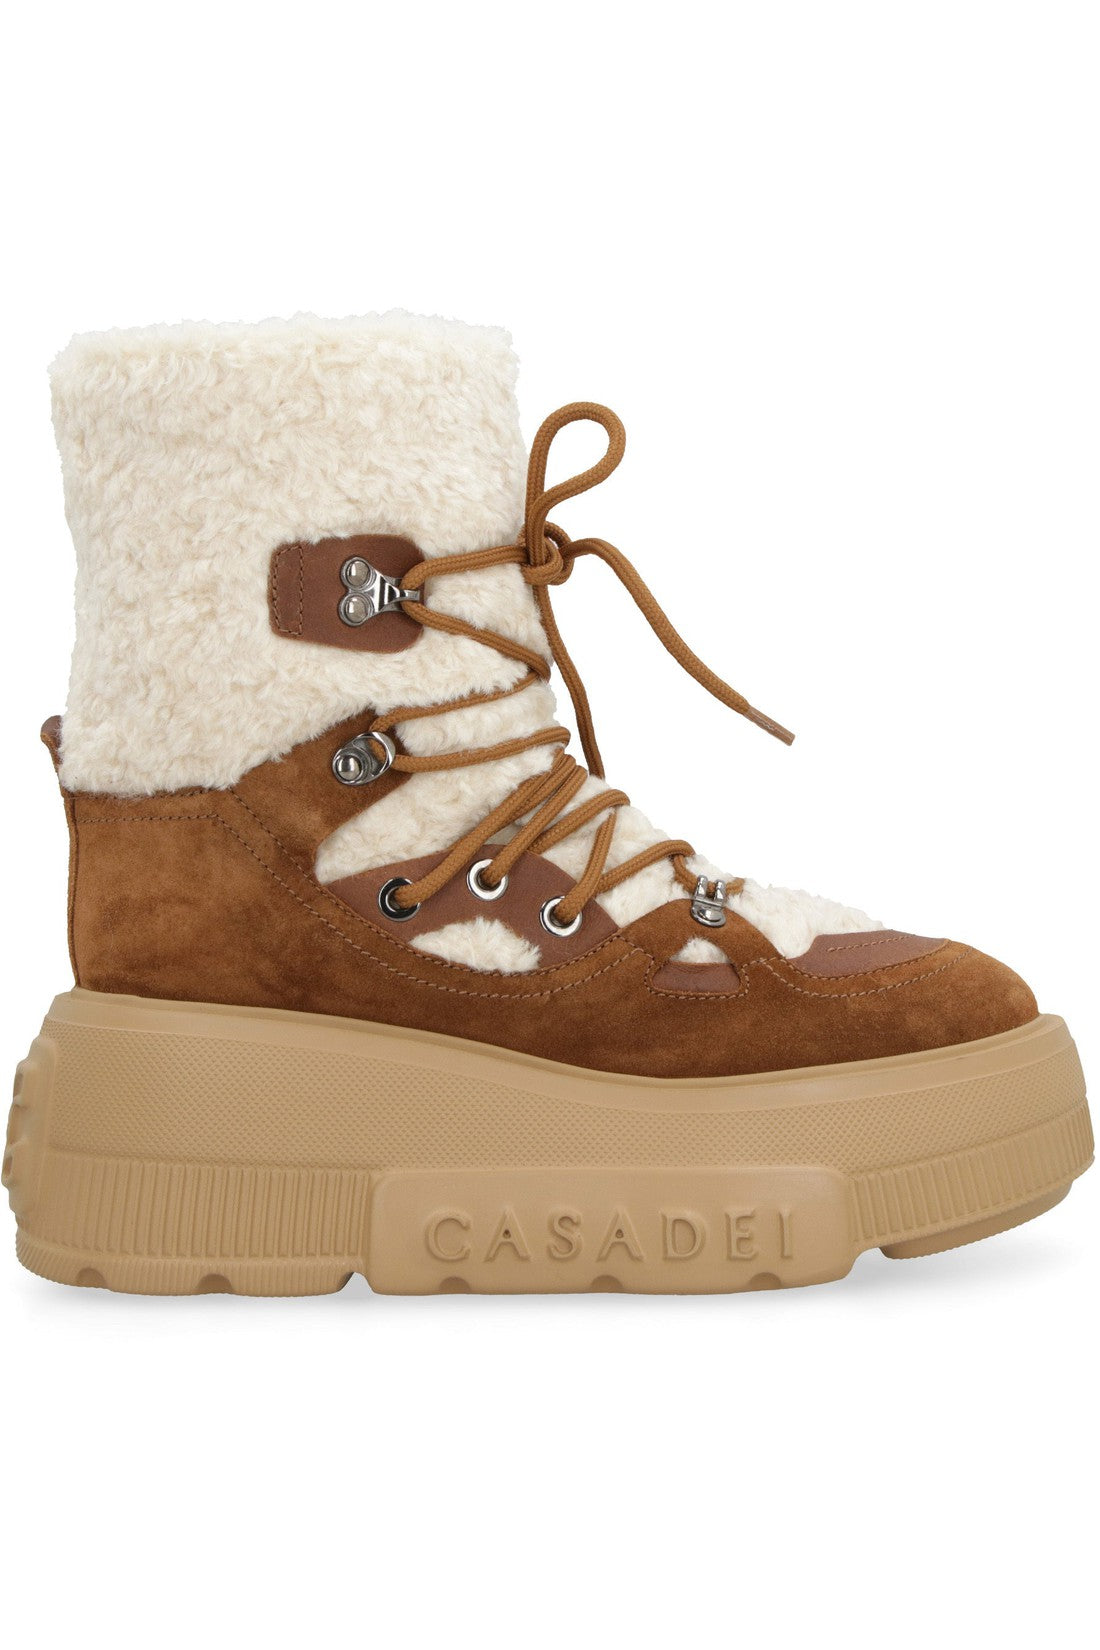 Casadei-OUTLET-SALE-Suede ankle boots-ARCHIVIST